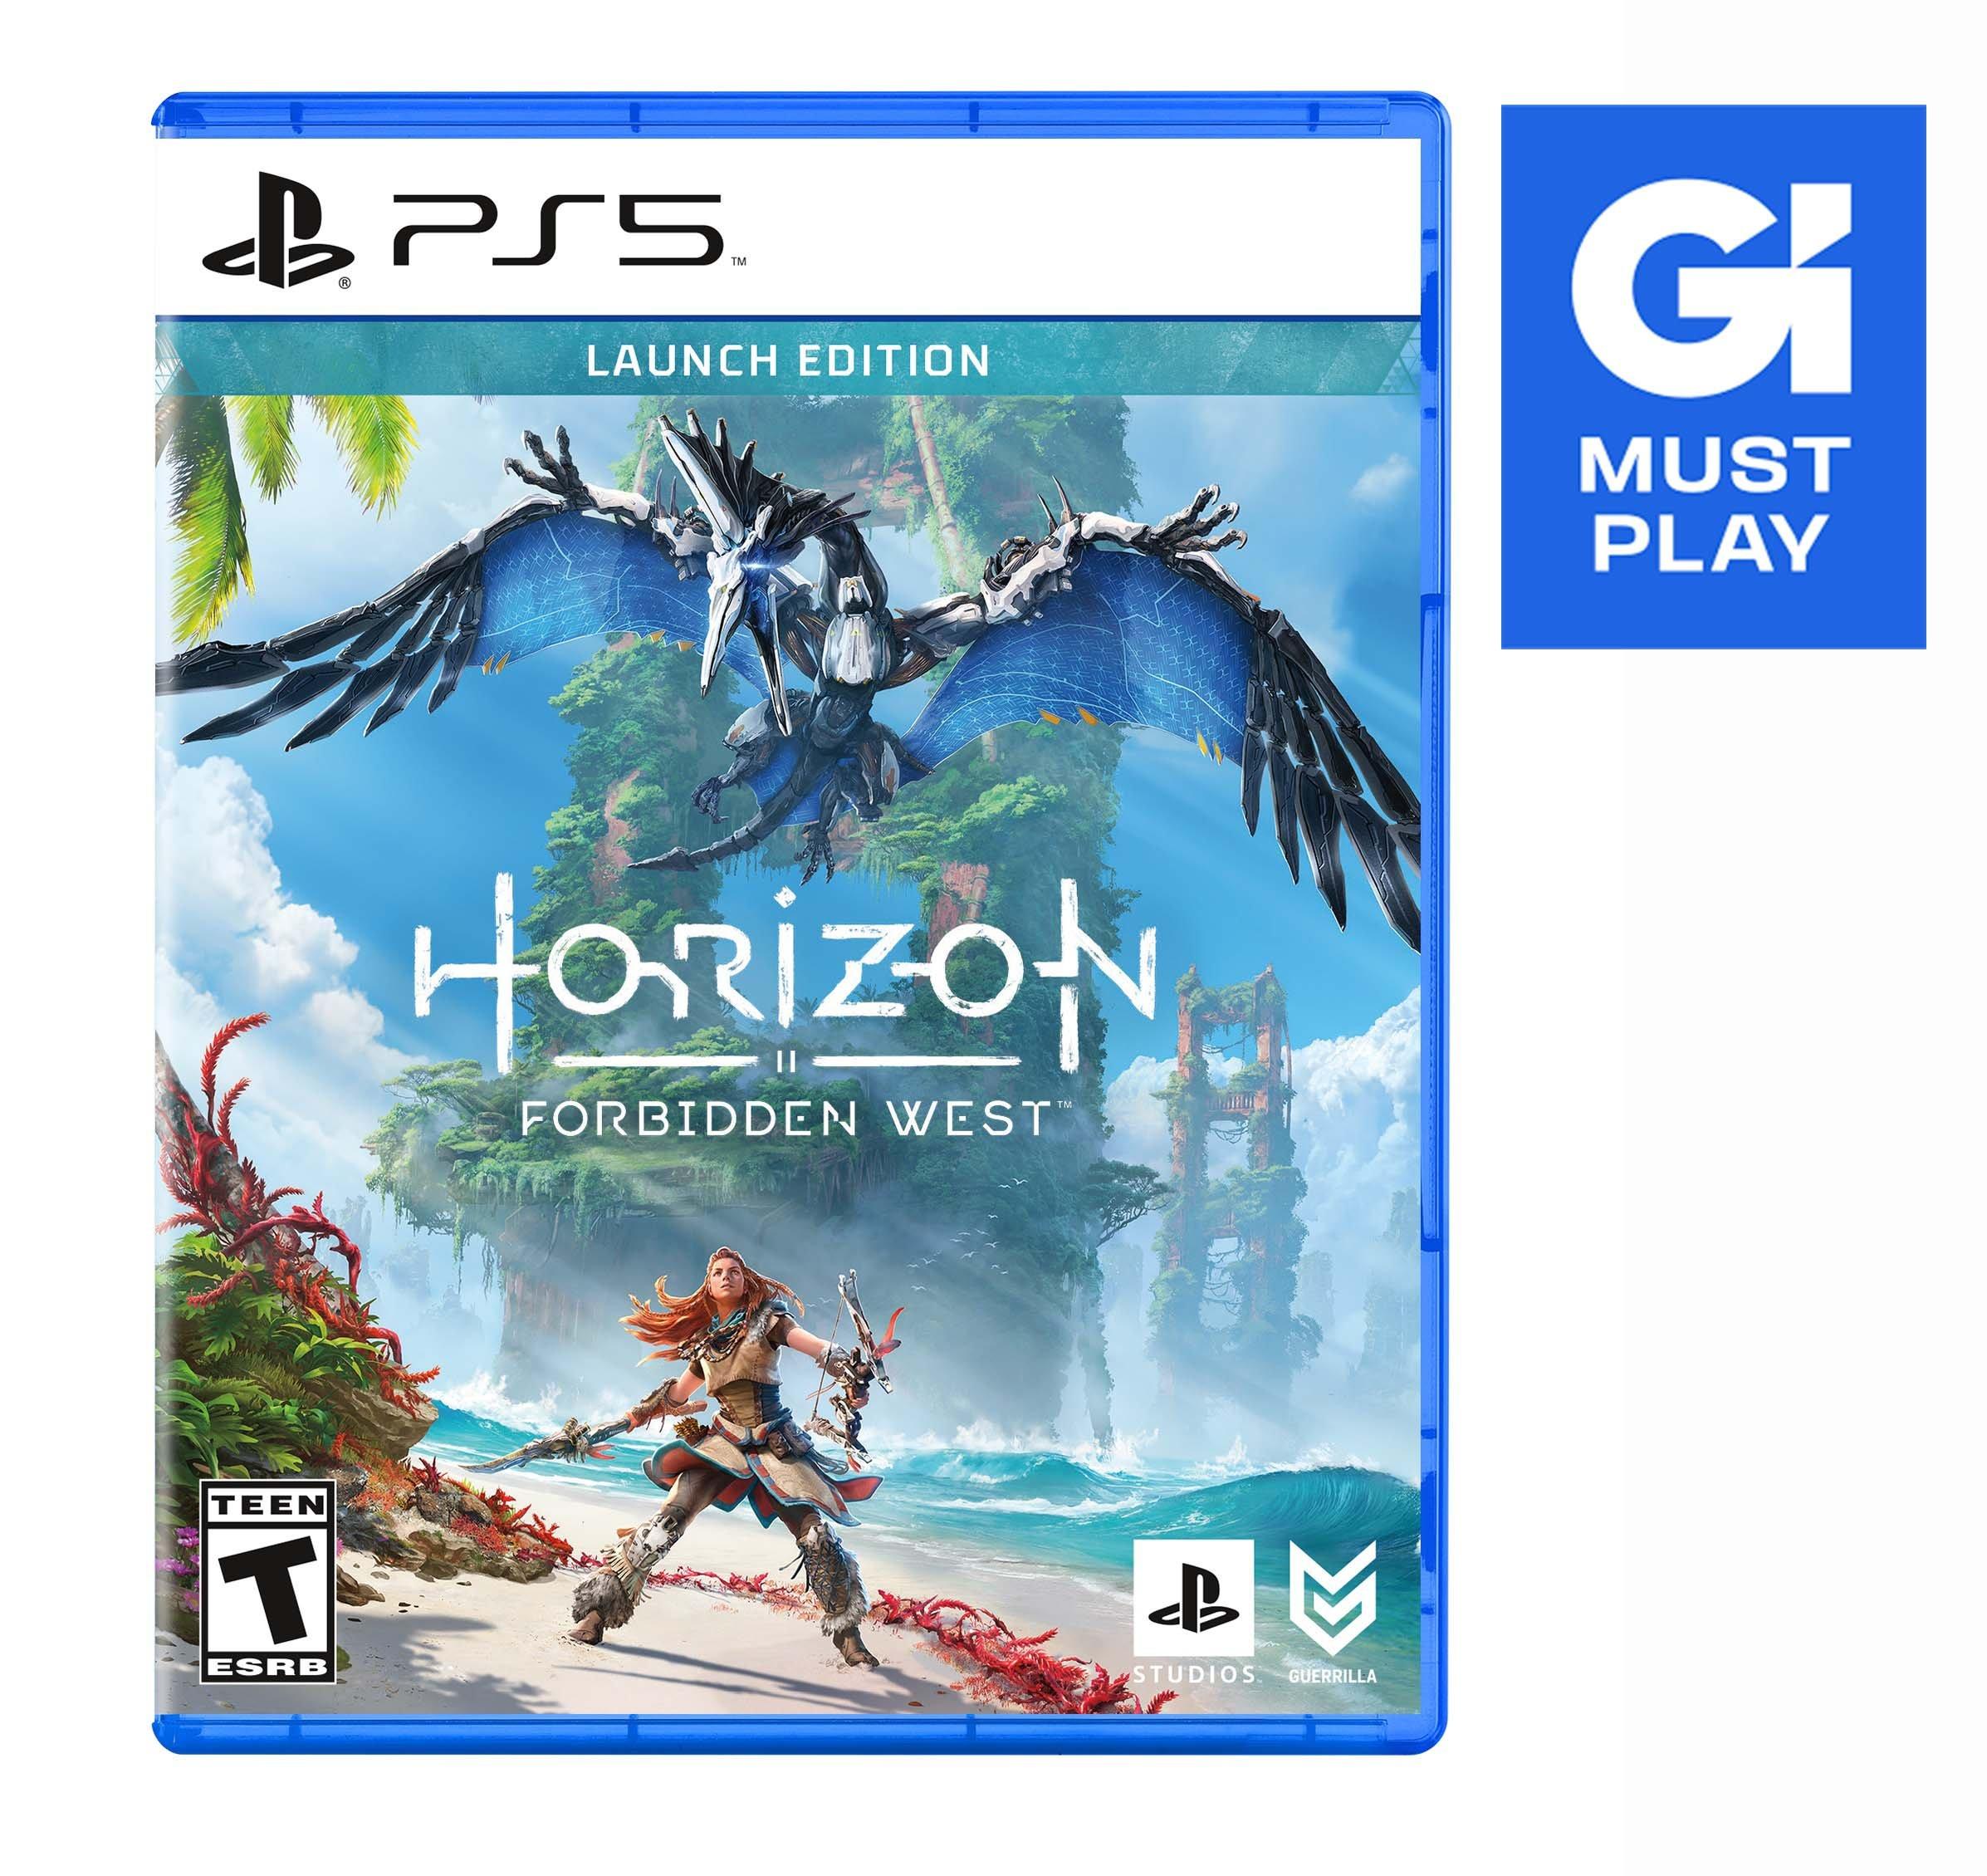 Horizon: Zero Dawn PC Review - An Even More Beautiful Game Worth Replaying